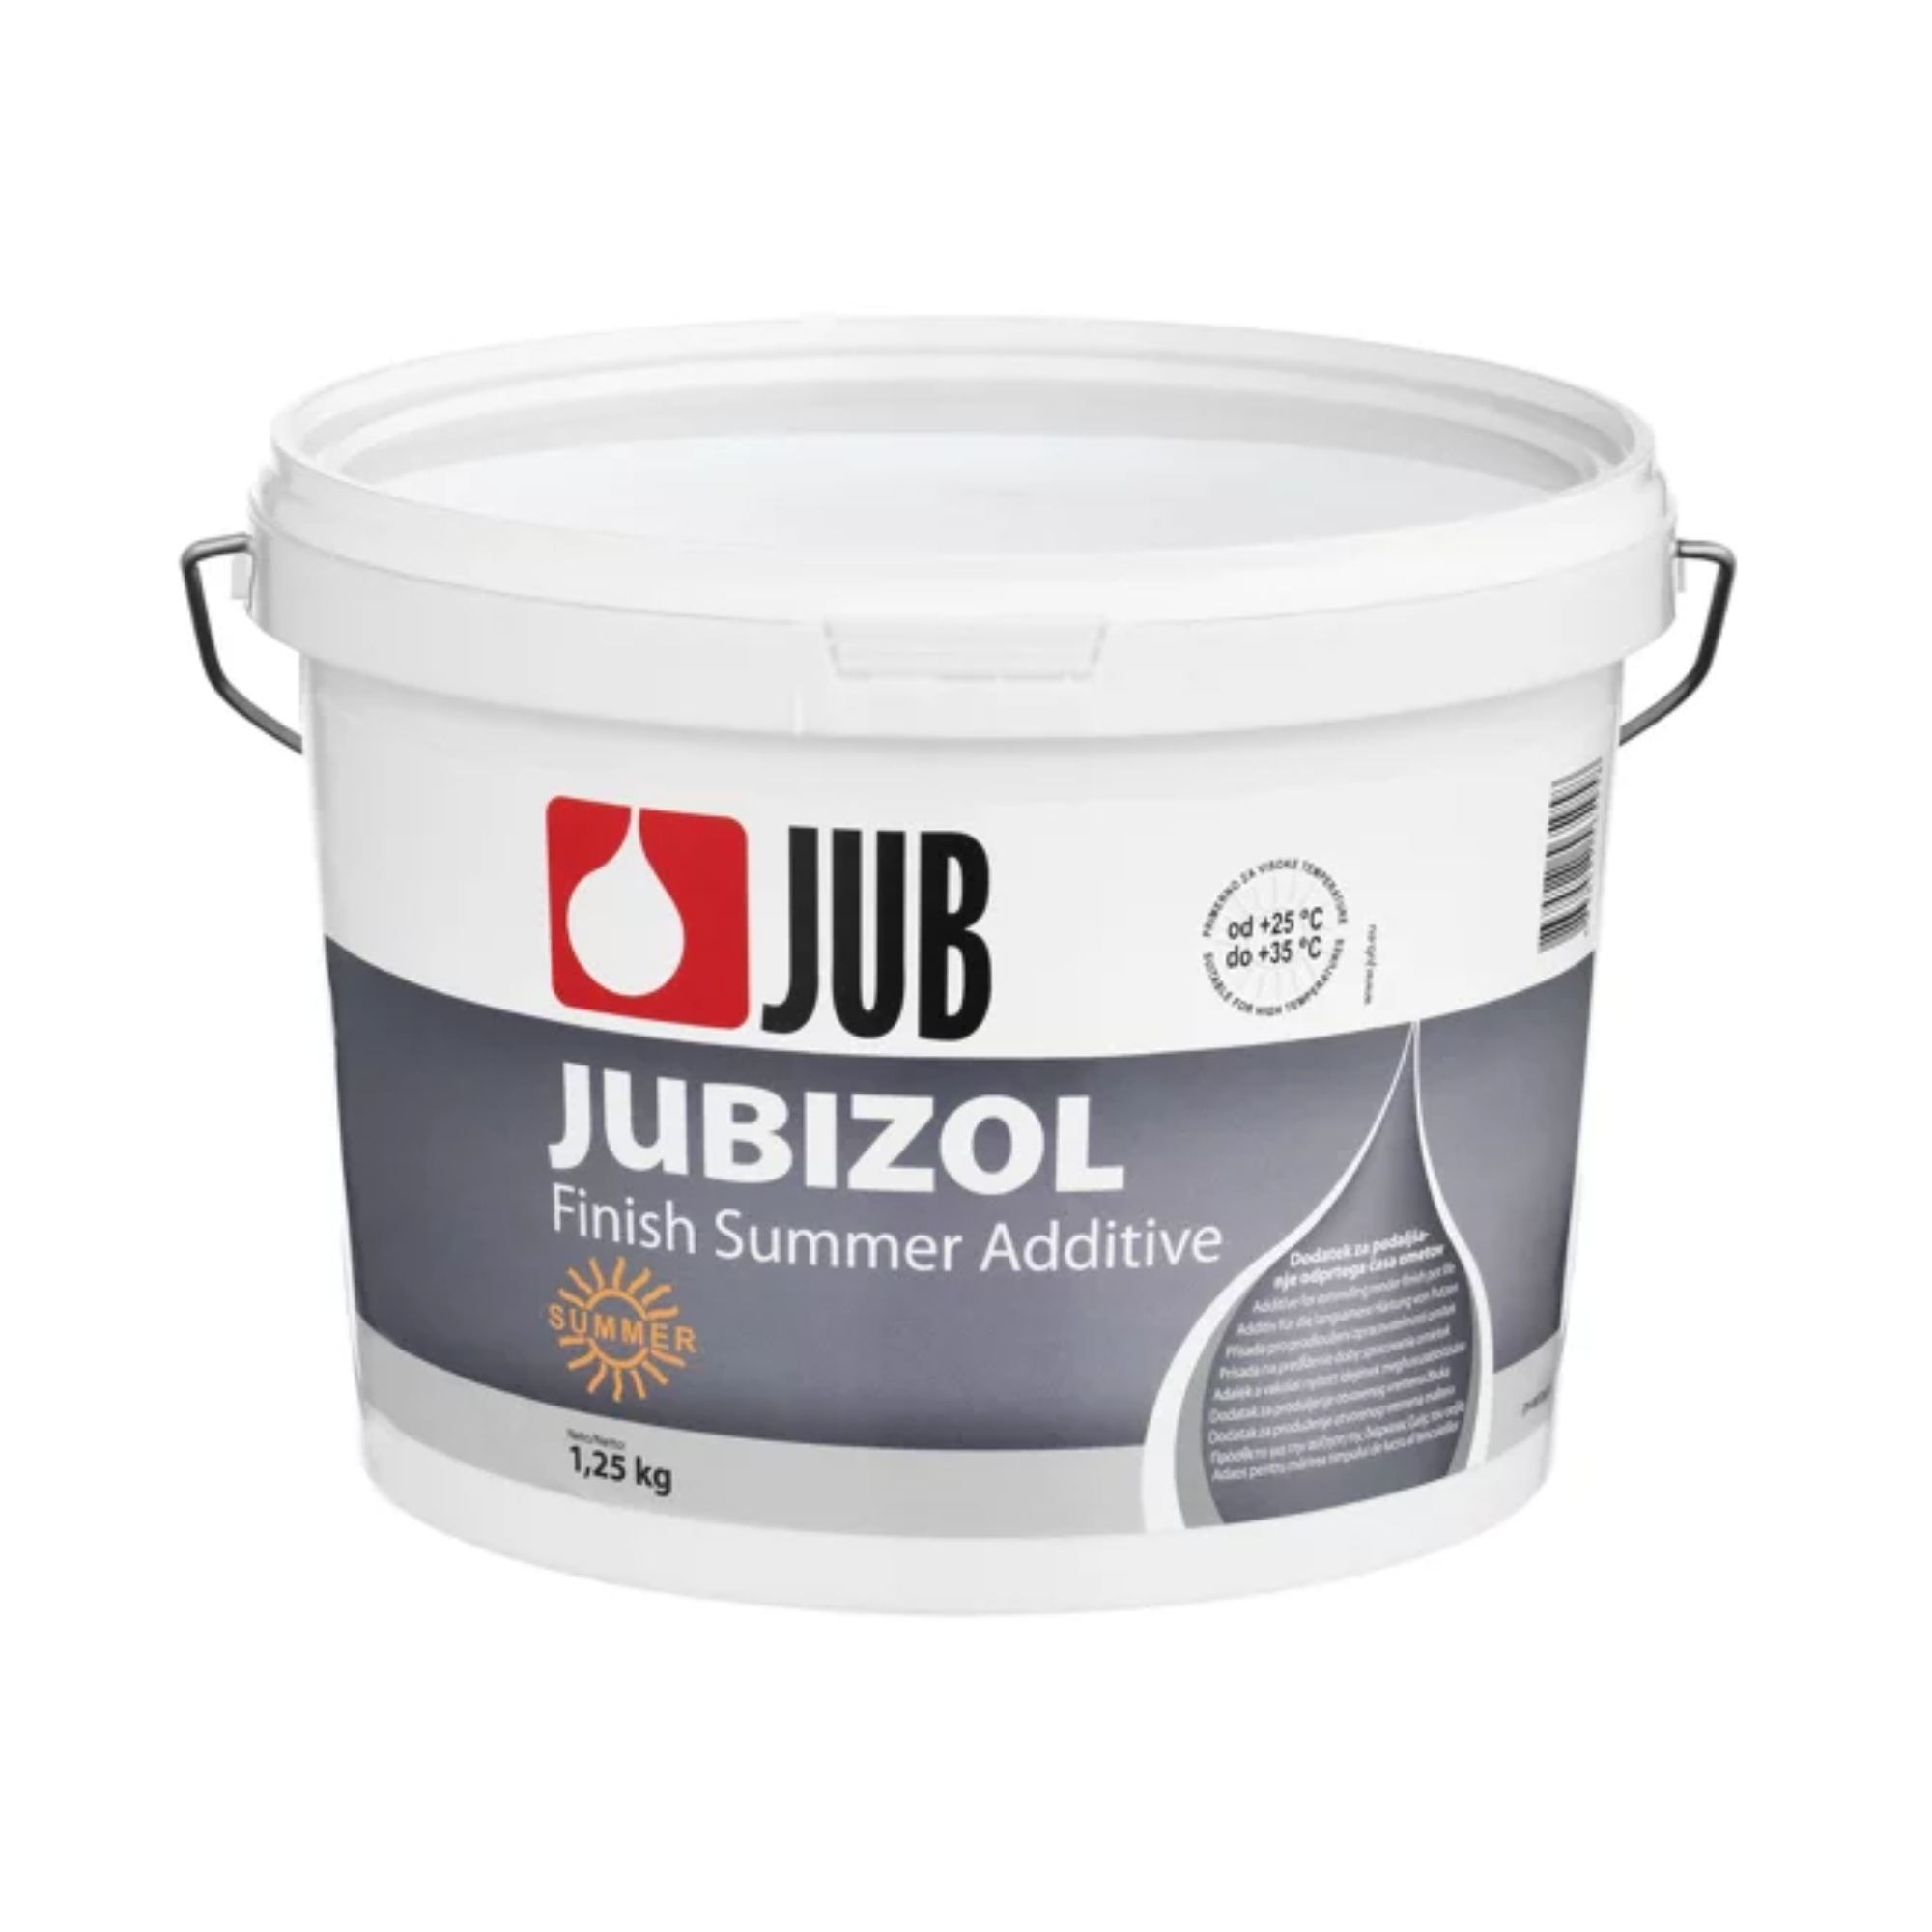 JUB JUBIZOL Finish Summer Additive letní přísada pro prodloužení doby tvrdnutí omítek 1,25 kg